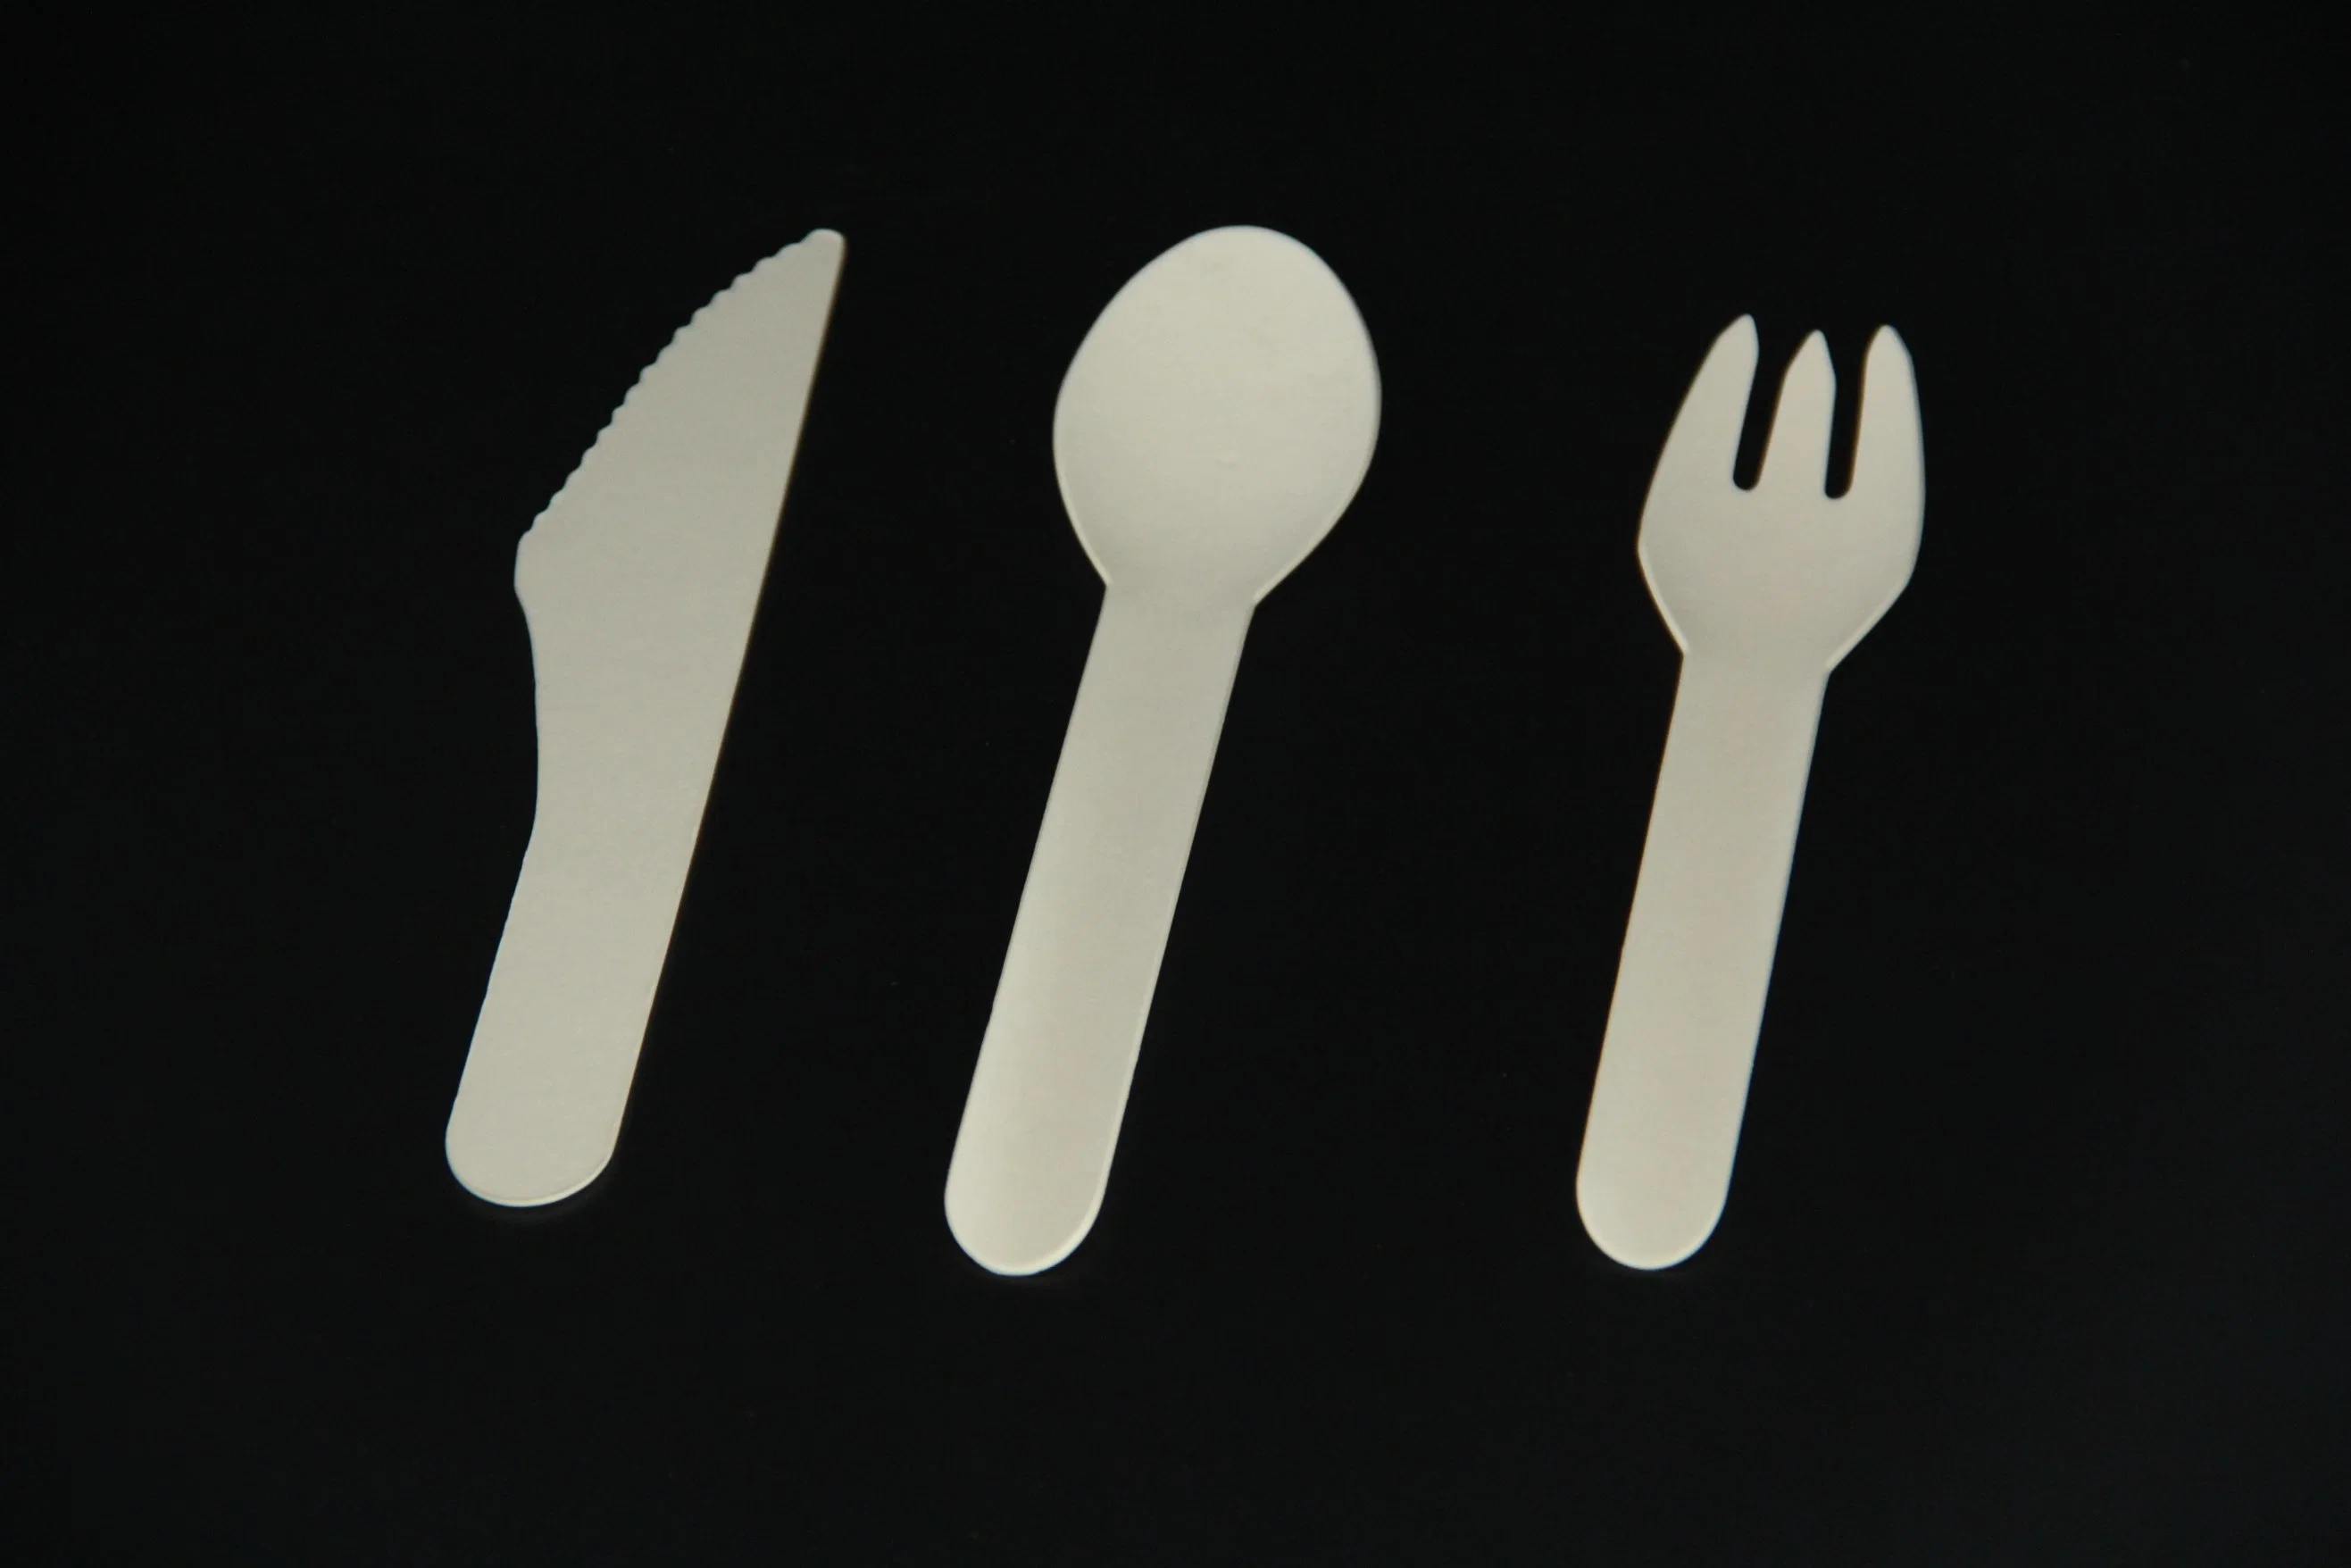 أدوات المائدة الخشبية المصنوعة من الخيزران للاستخدام الفردي والودودة للبيئة تضع السكين على شكل سكين